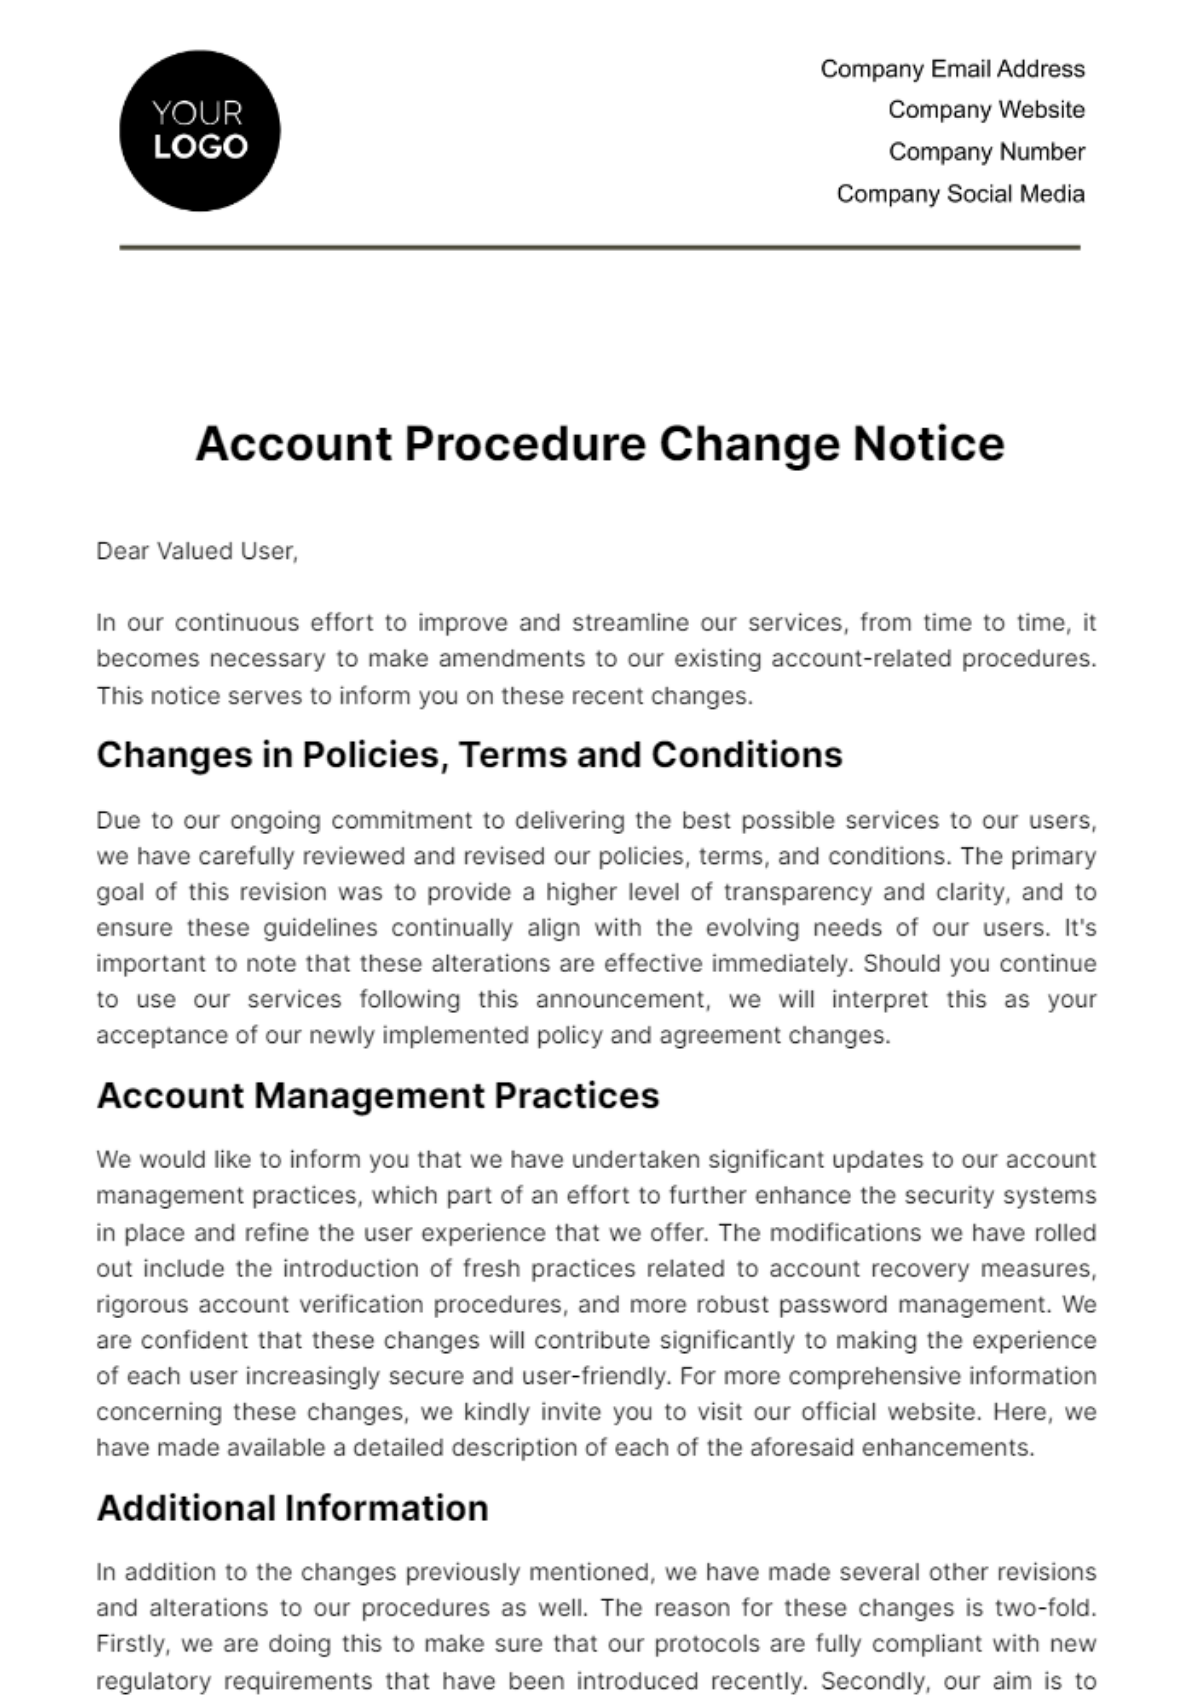 Account Procedure Change Notice Template